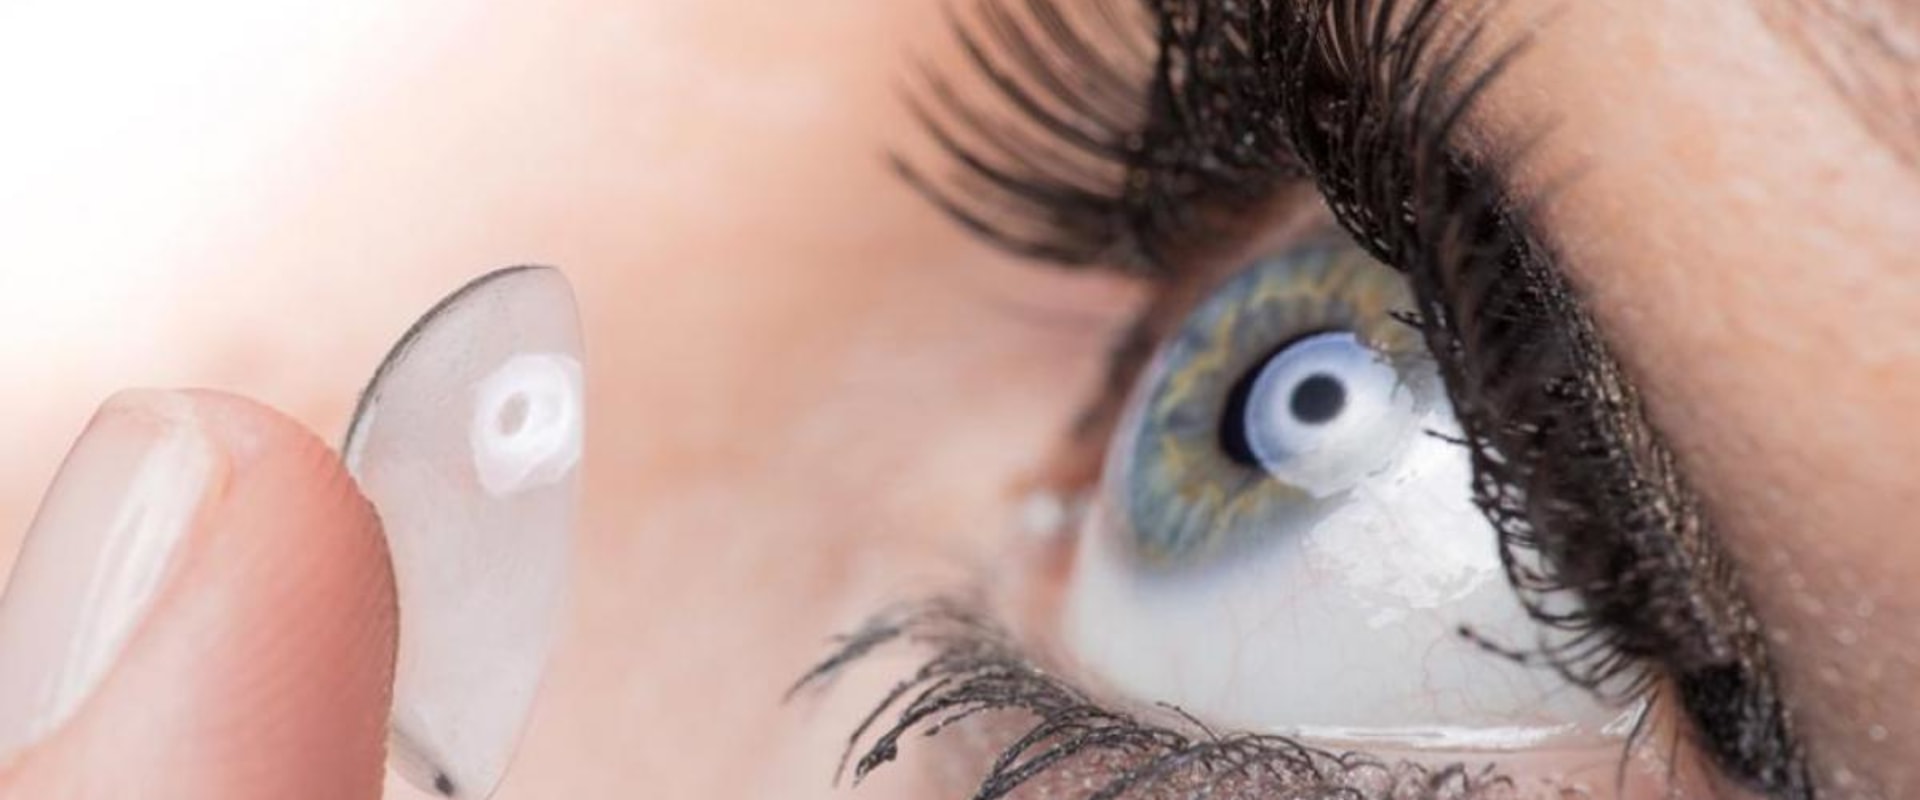 Cuánto tiempo te puedes dormir con lentes de contacto?